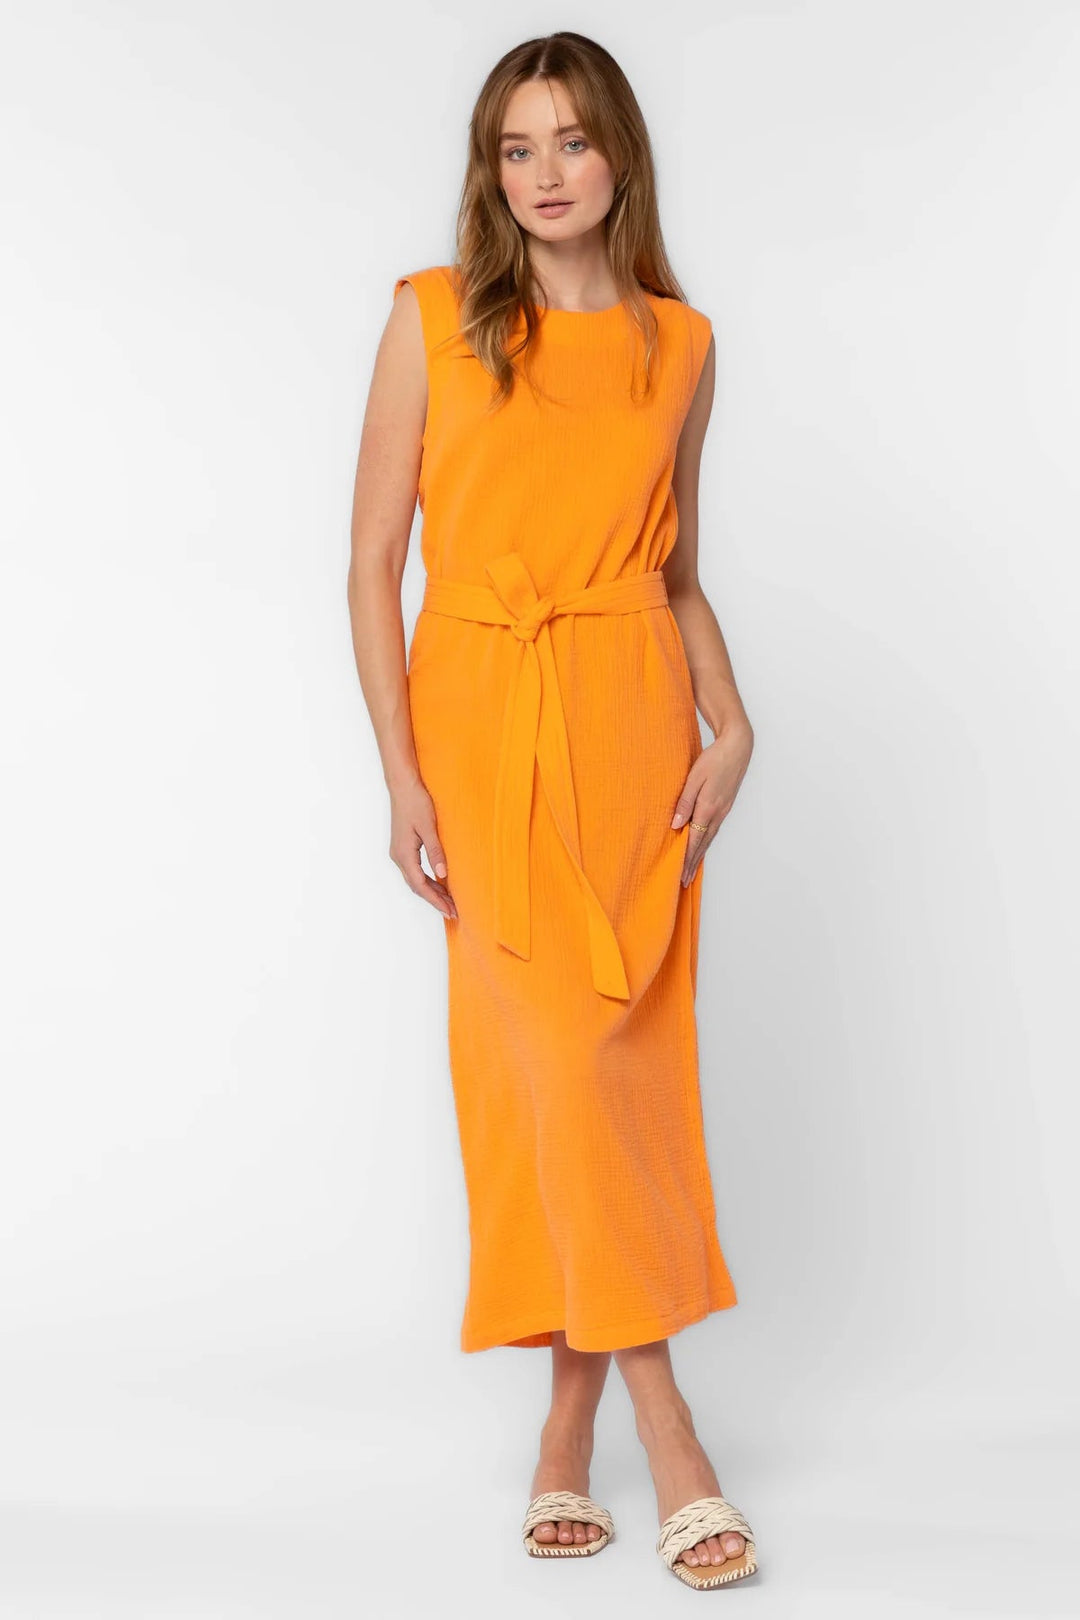 Aurelie Tangerine Dress - Lush Lemon - Women's Clothing - Velvet Hearts - 12682